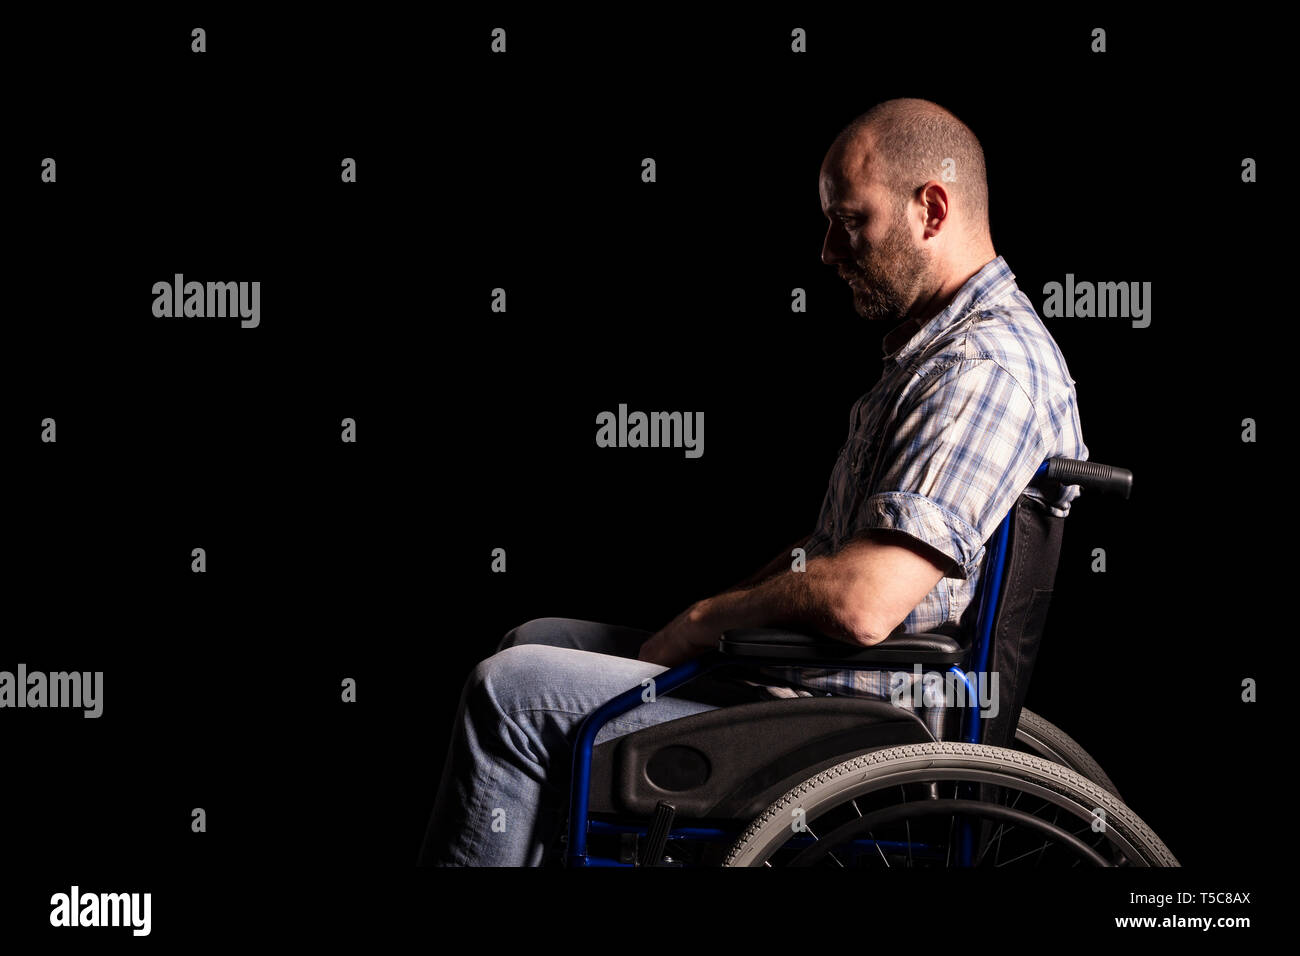 Portrait der kaukasischen Mann sitzt im Rollstuhl, traurige und nachdenkliche Ausdruck. Schwarzen Hintergrund. Konzept der Patienten- und körperlichen Behinderungen. Stockfoto